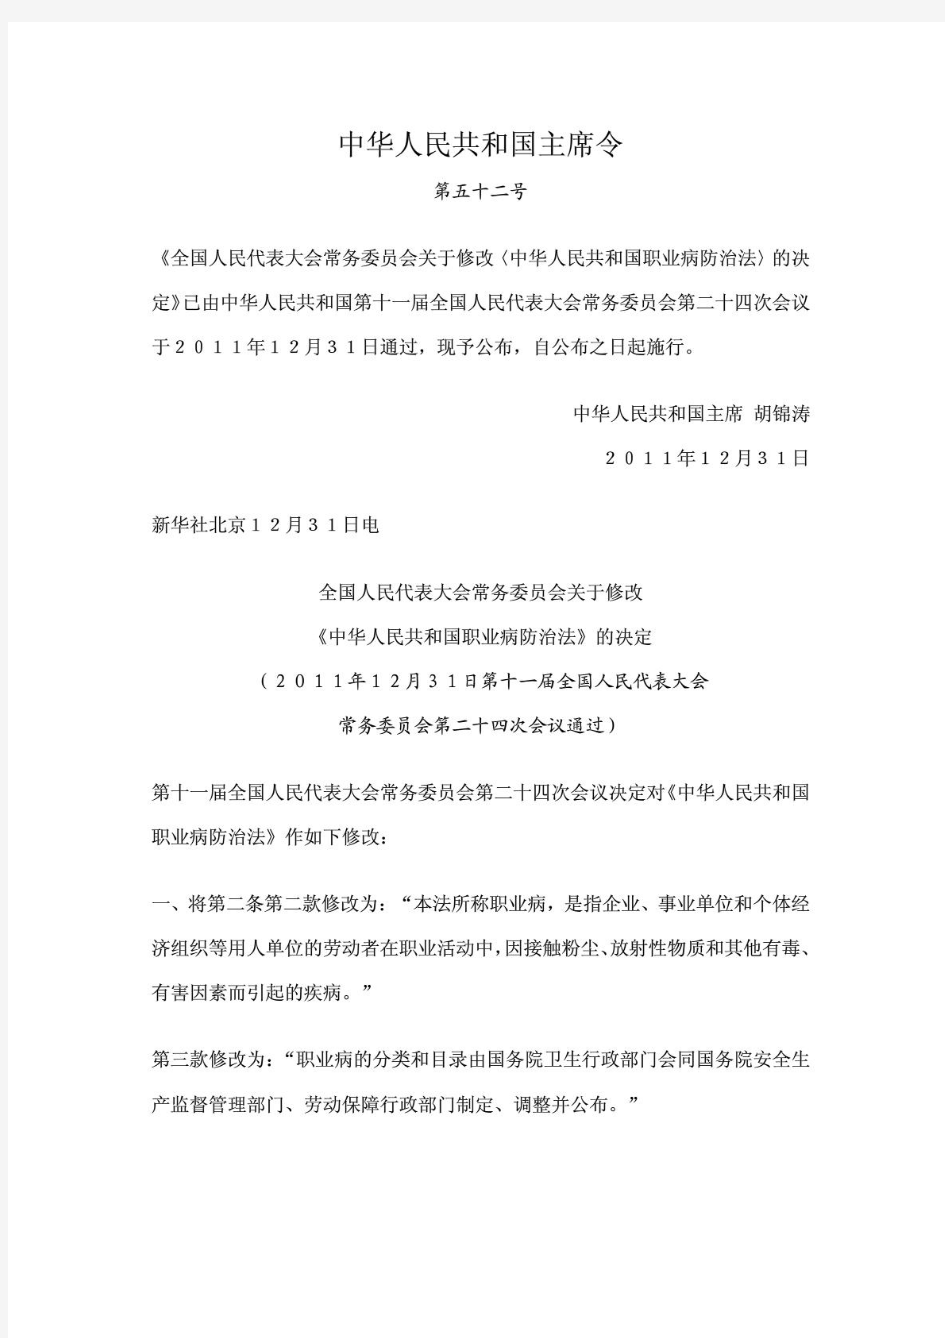 主席令第52号：《中华人民共和国职业病防治法(2011版)》